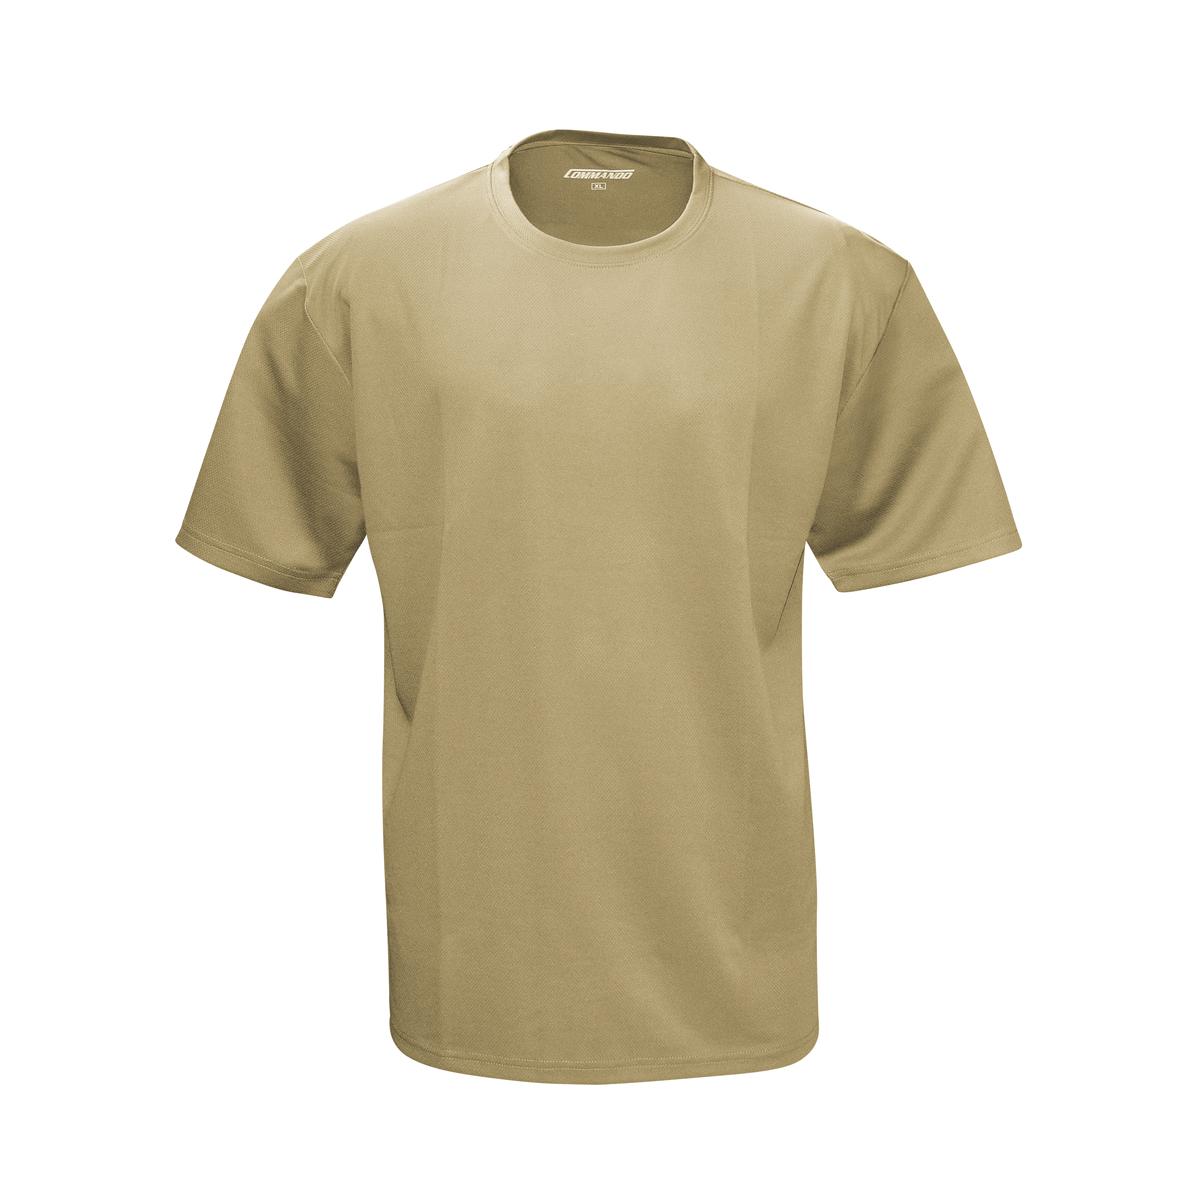 Männer T-Shirt Quickdry beige